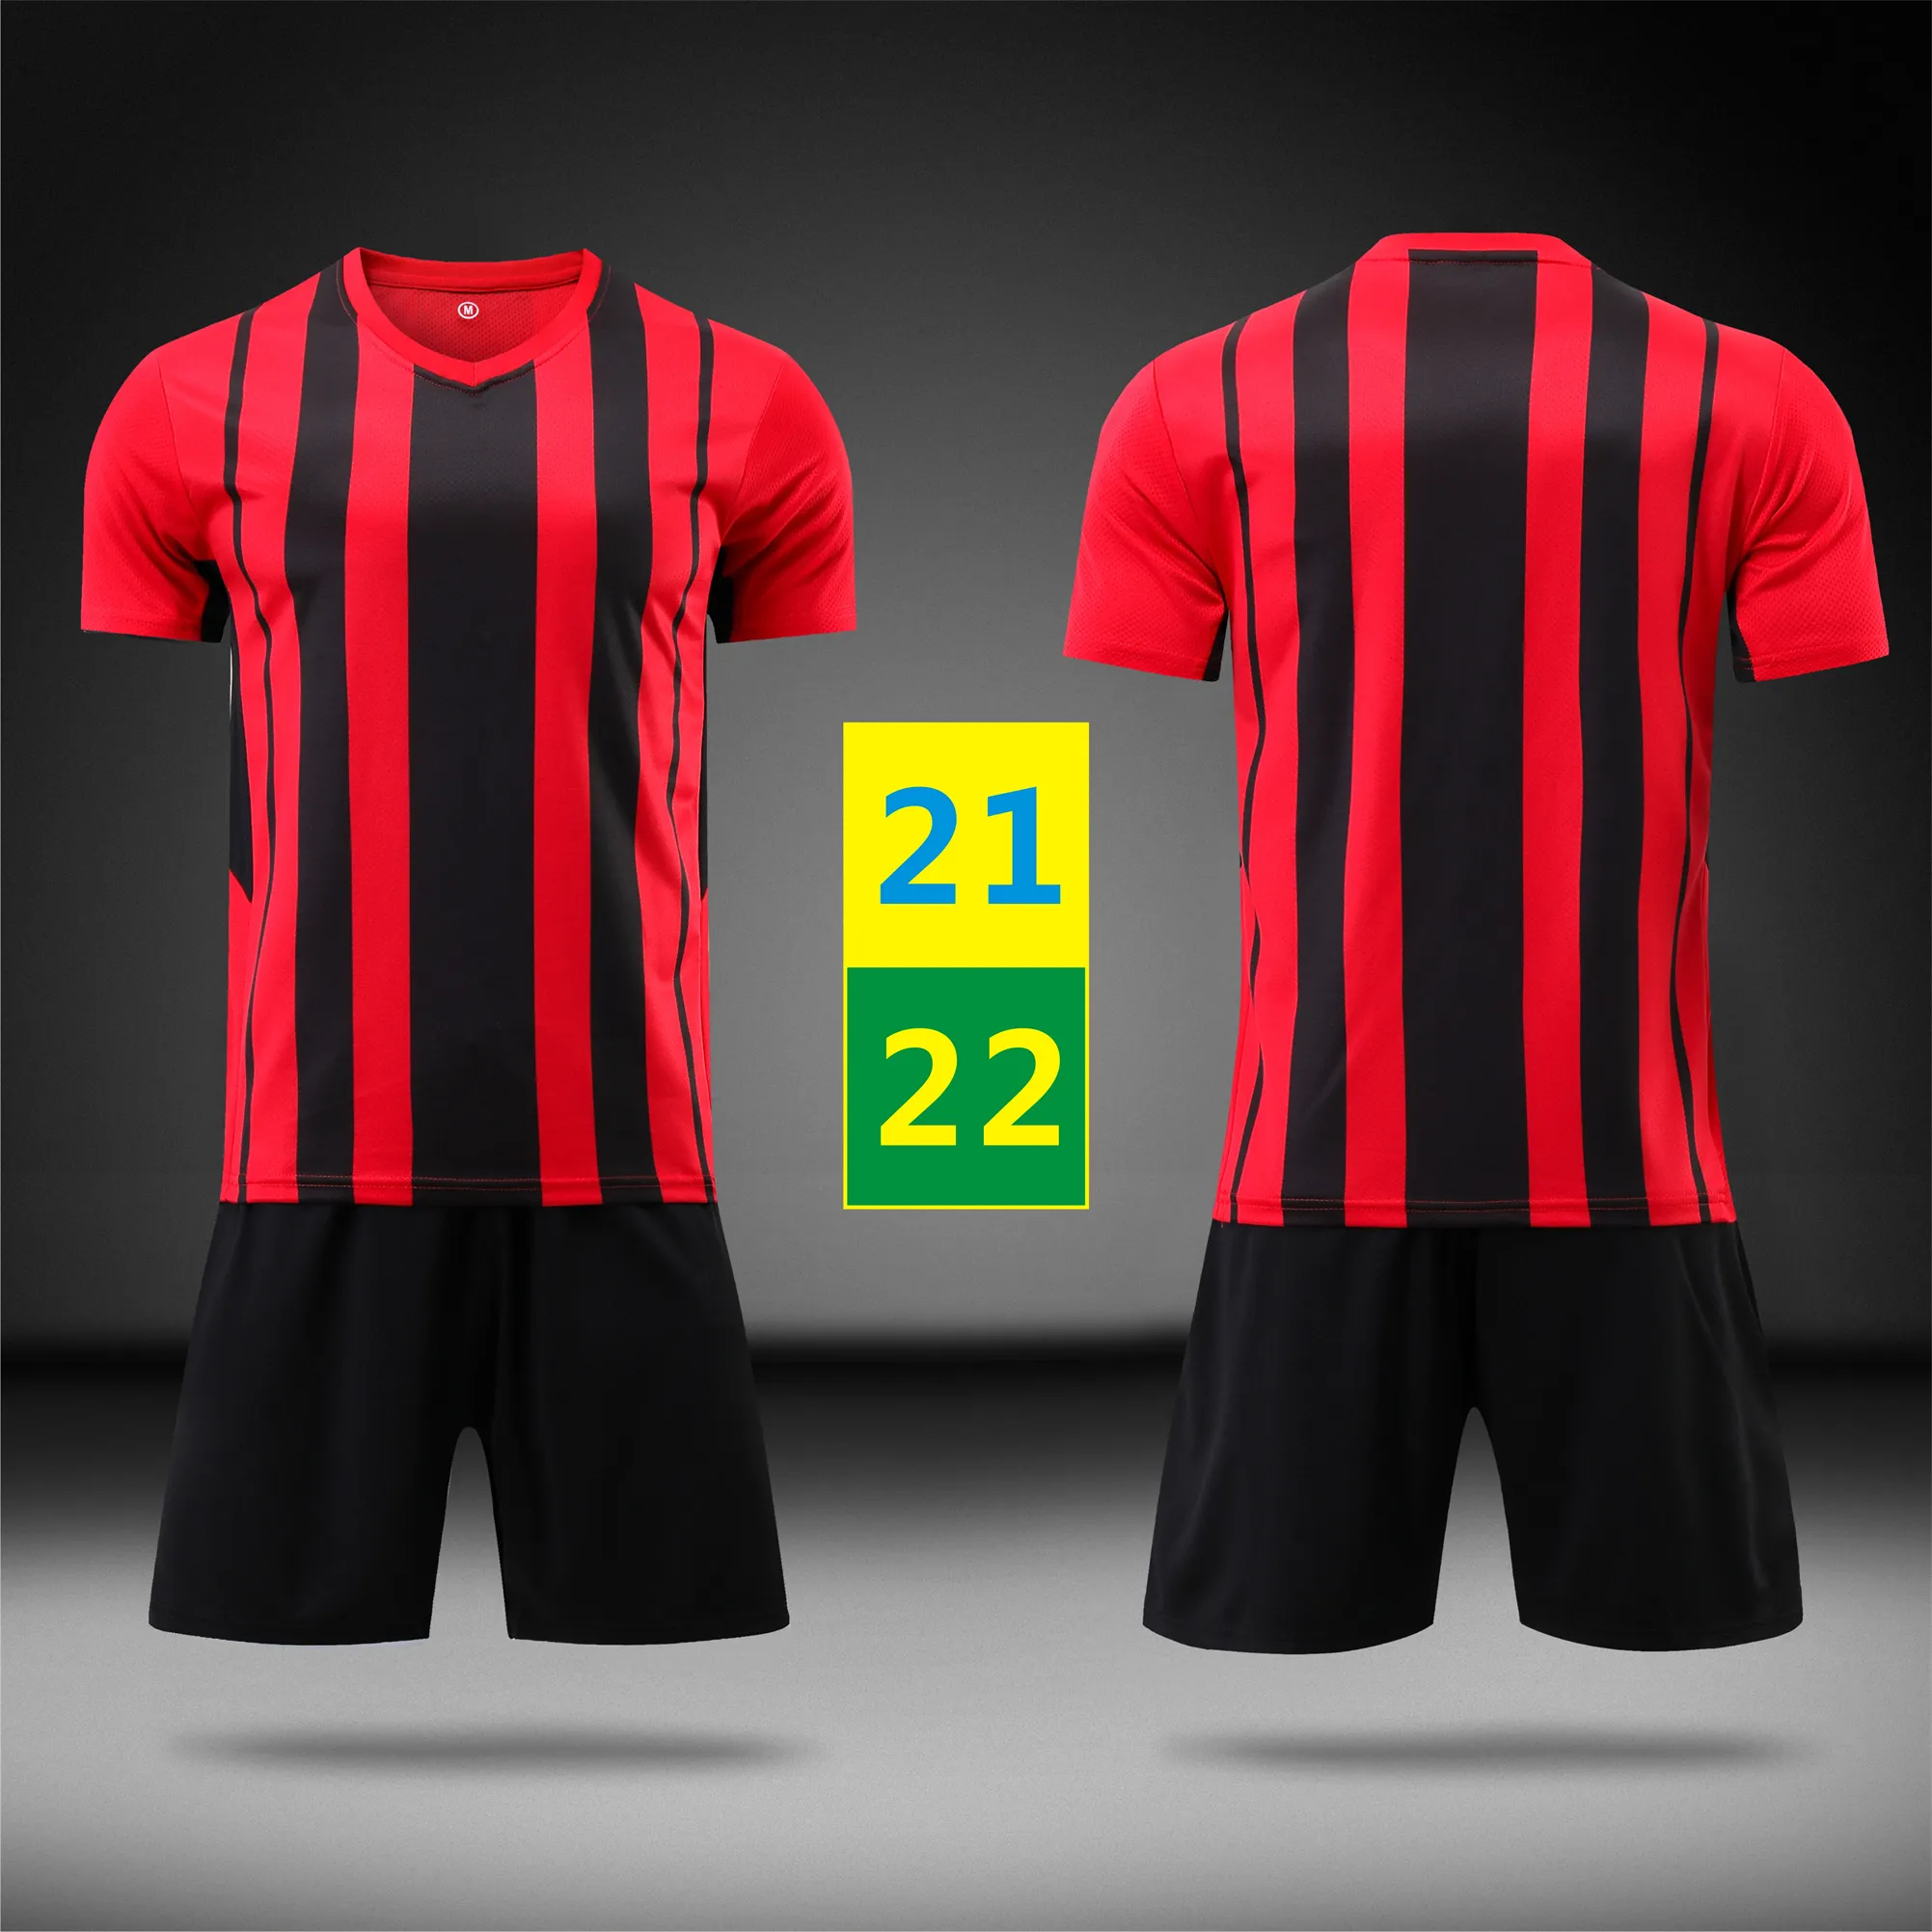 2021 Home Jersey Dorosłych Piłki Nożnej Nosić Krótki Rękaw Dres Training 21 22 Menss Mundury Oddychające Sportswear Koszulki piłkarskie 2022 z logo # AcMz-21B1